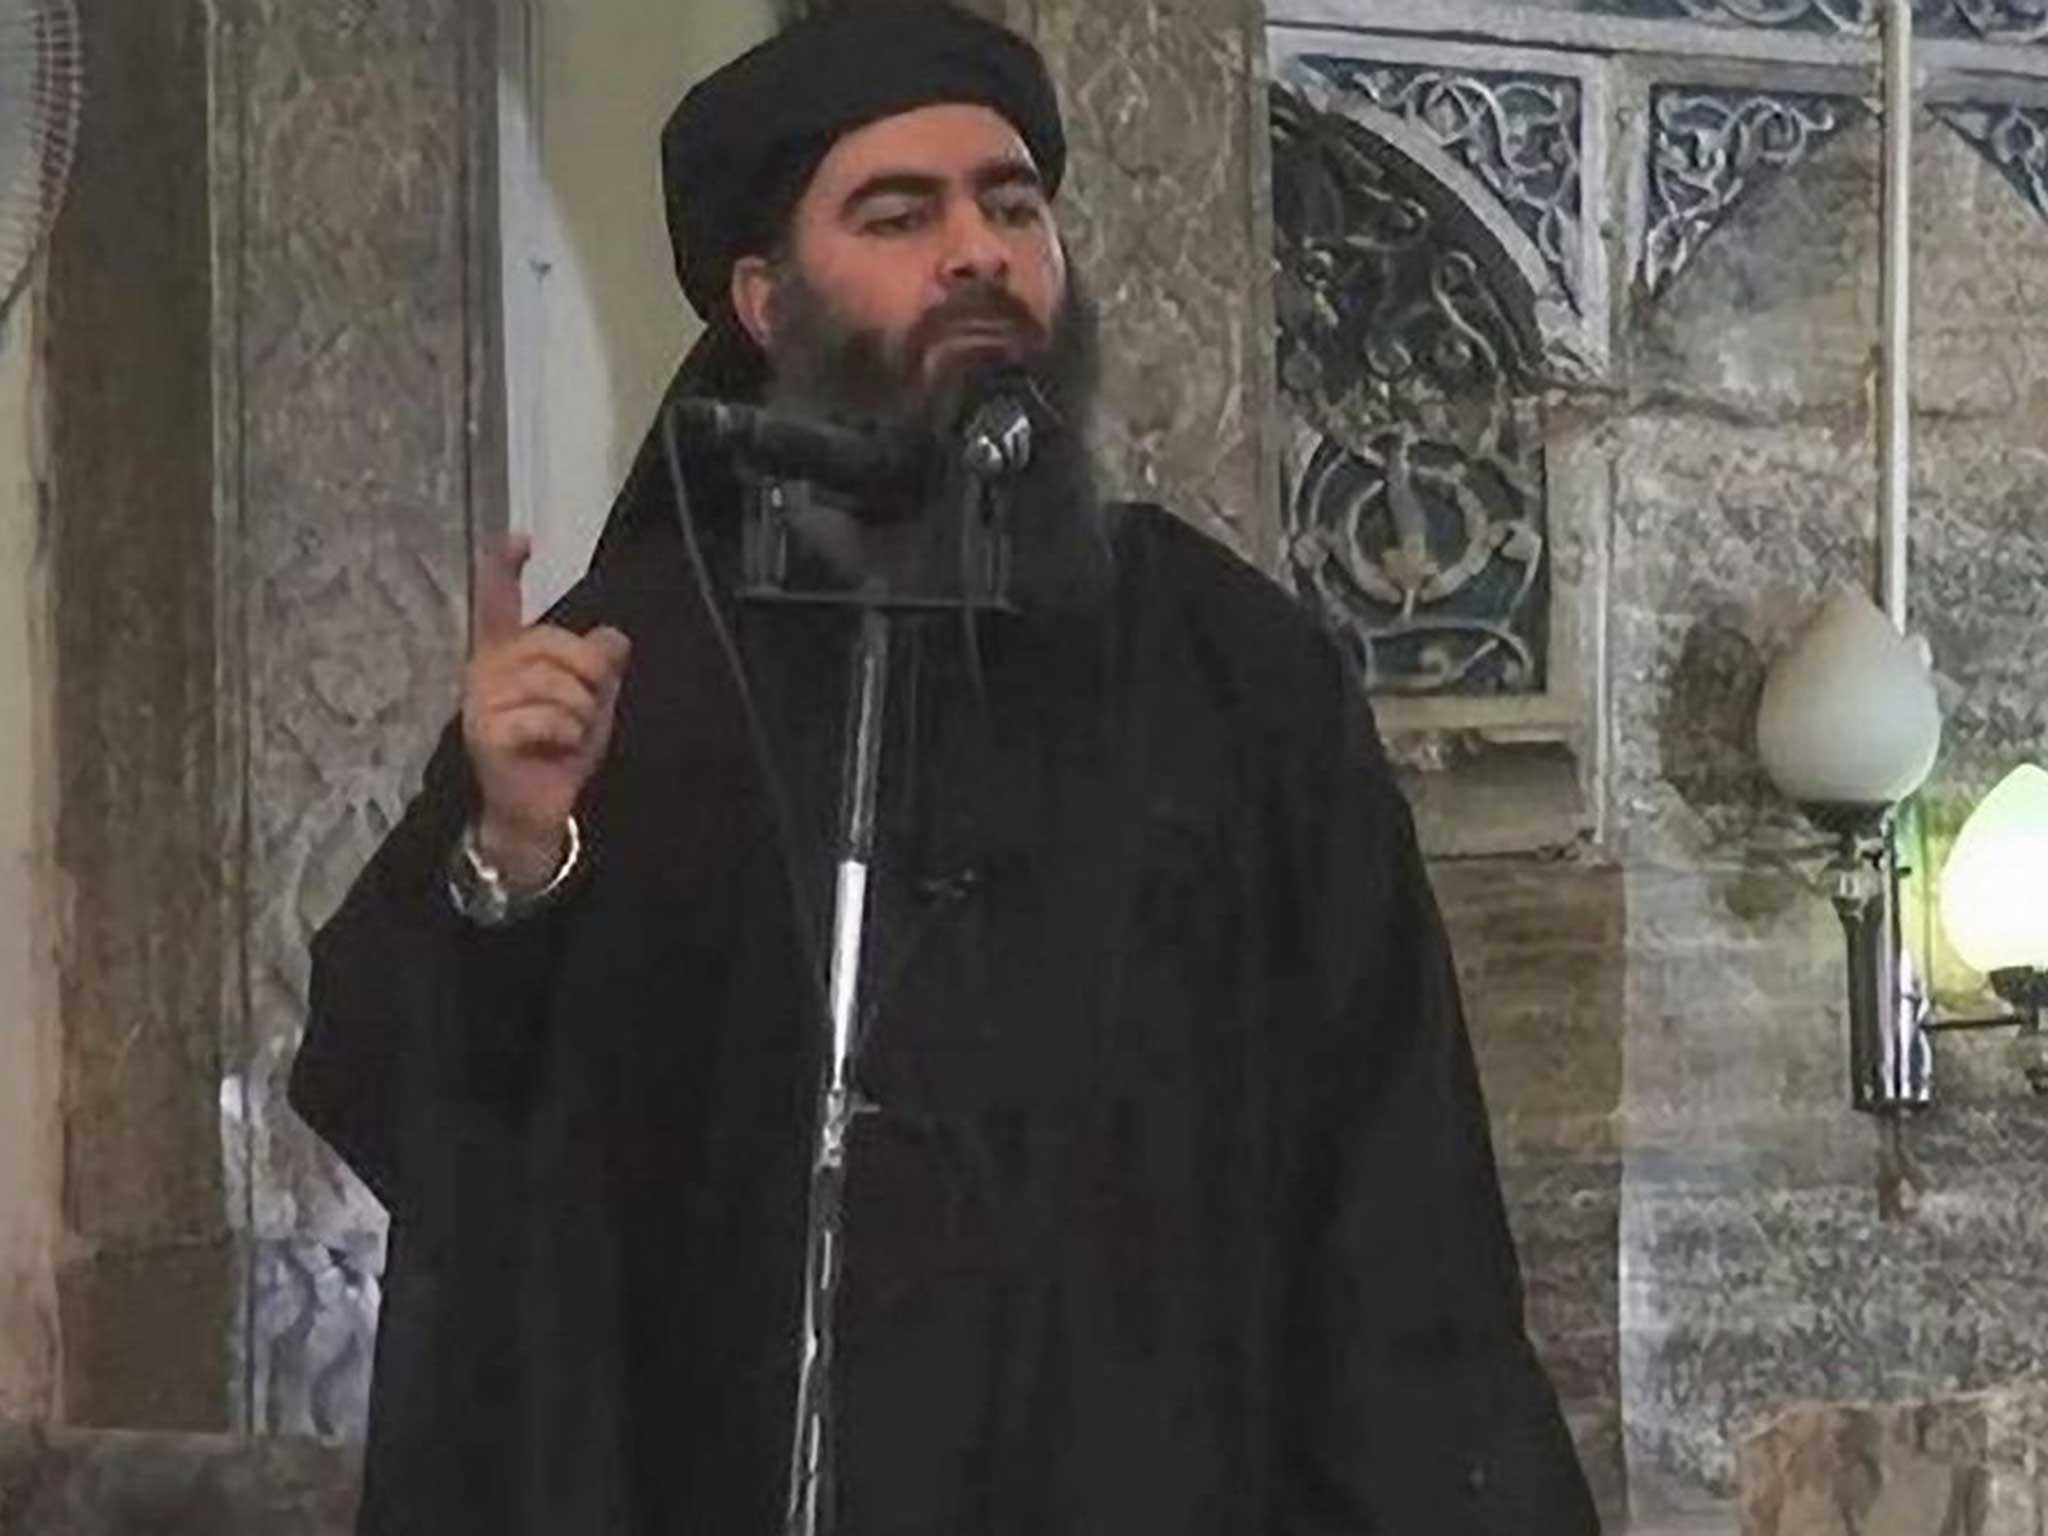 Abu Bakr al-Baghdadi, the caliph of the self-proclaimed Islamic State